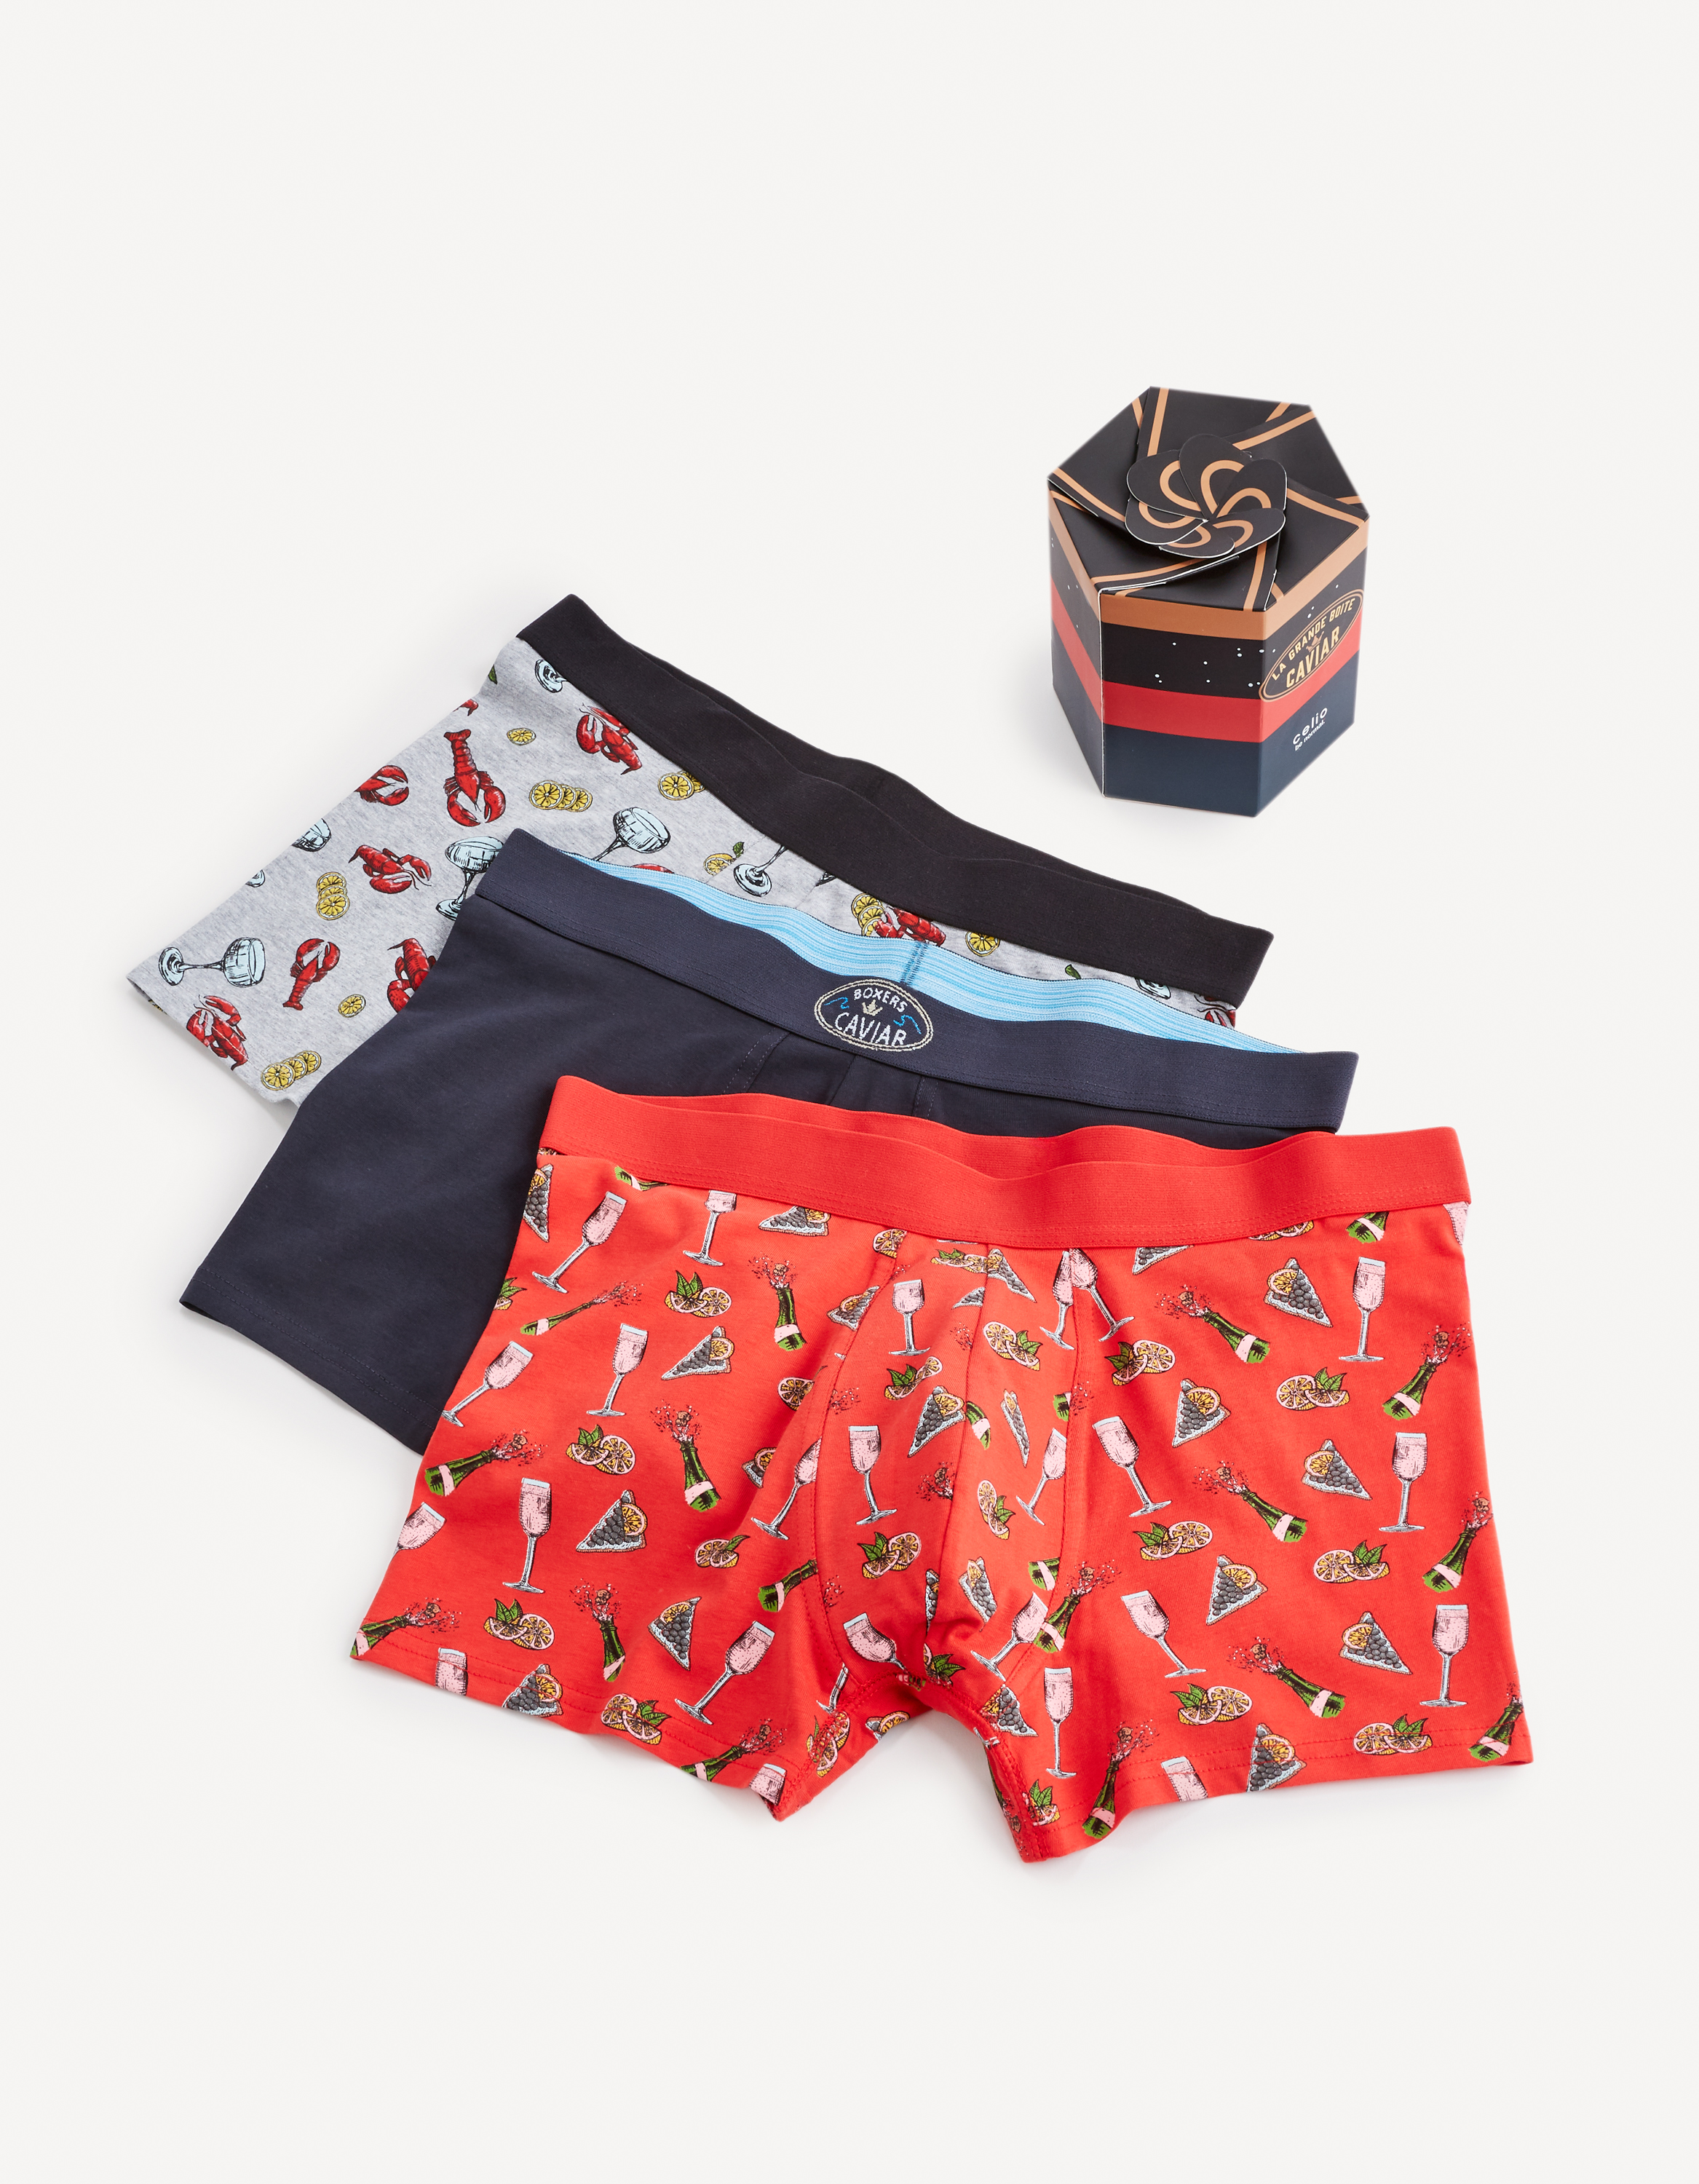 Celio Boxer Shorts Gift Pack, 3 Pieces - Men's